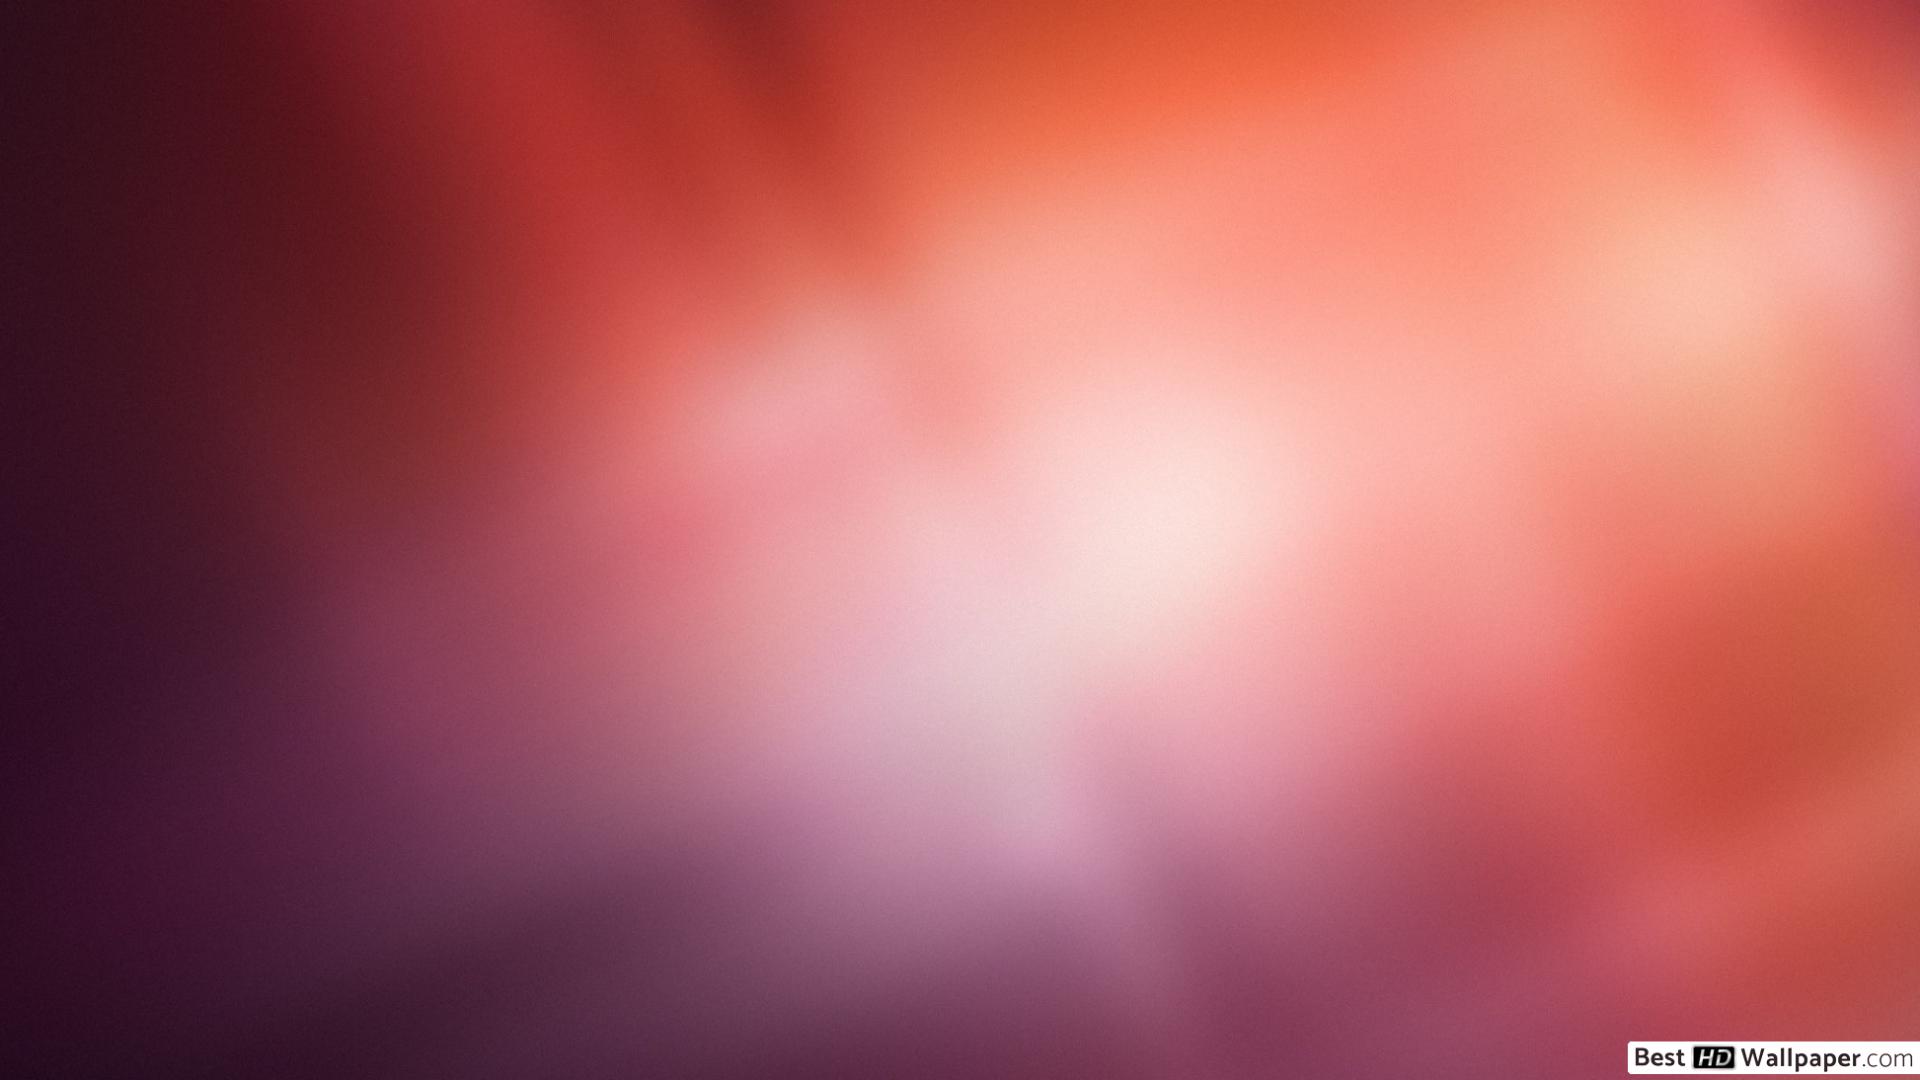 ubuntu fondo de pantalla,rojo,rosado,cielo,ligero,púrpura